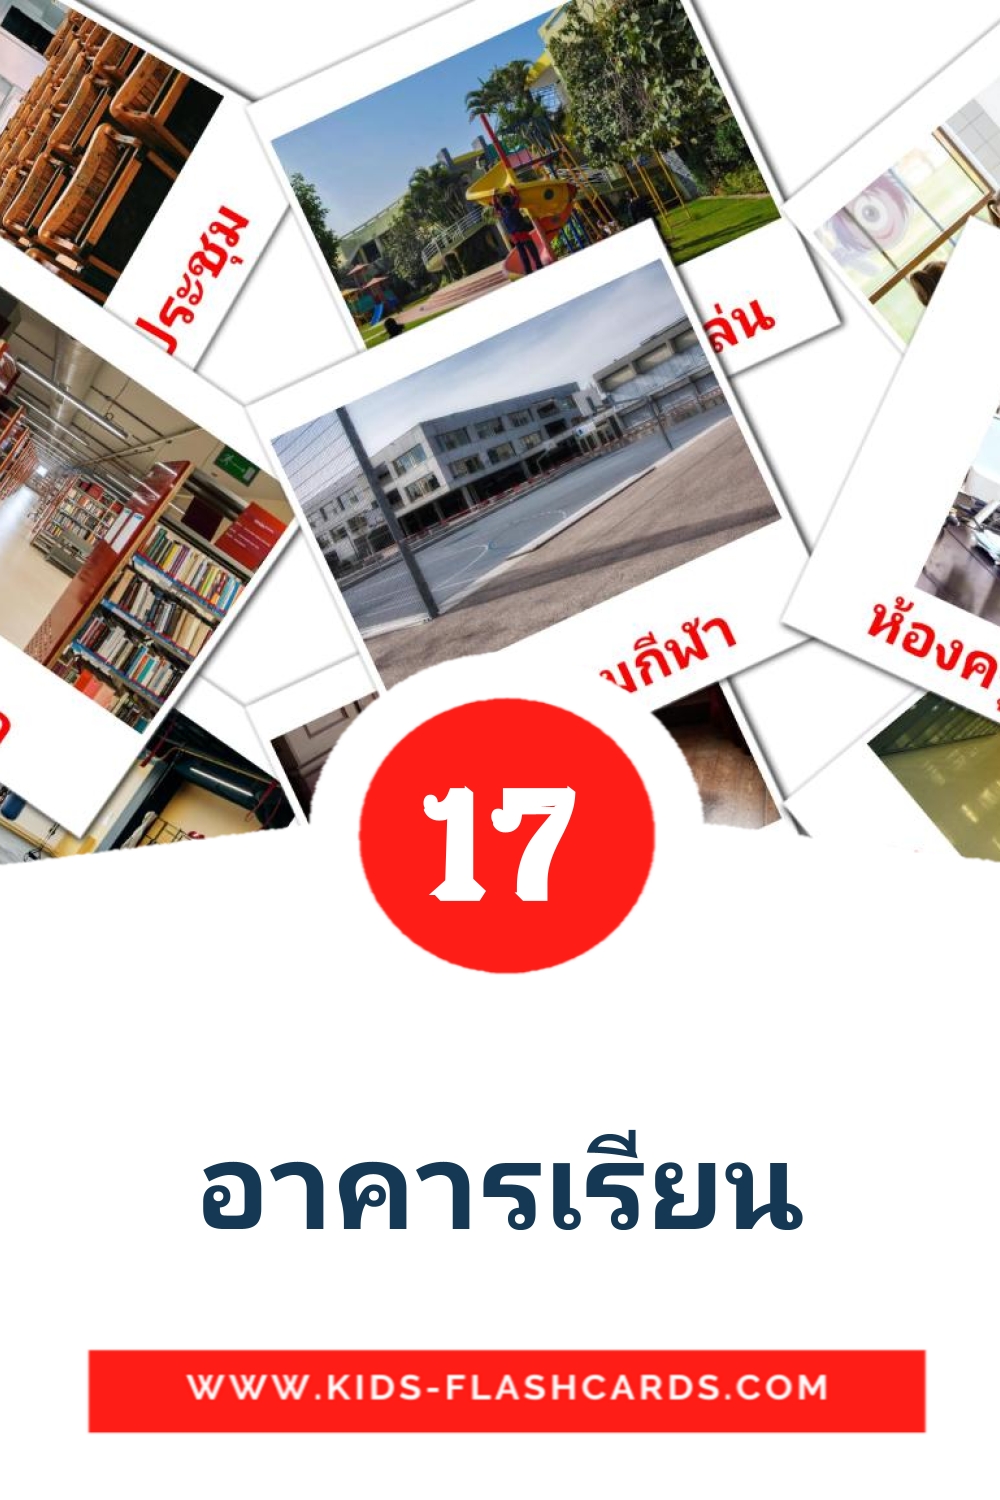 17 Cartões com Imagens de อาคารเรียน para Jardim de Infância em thai